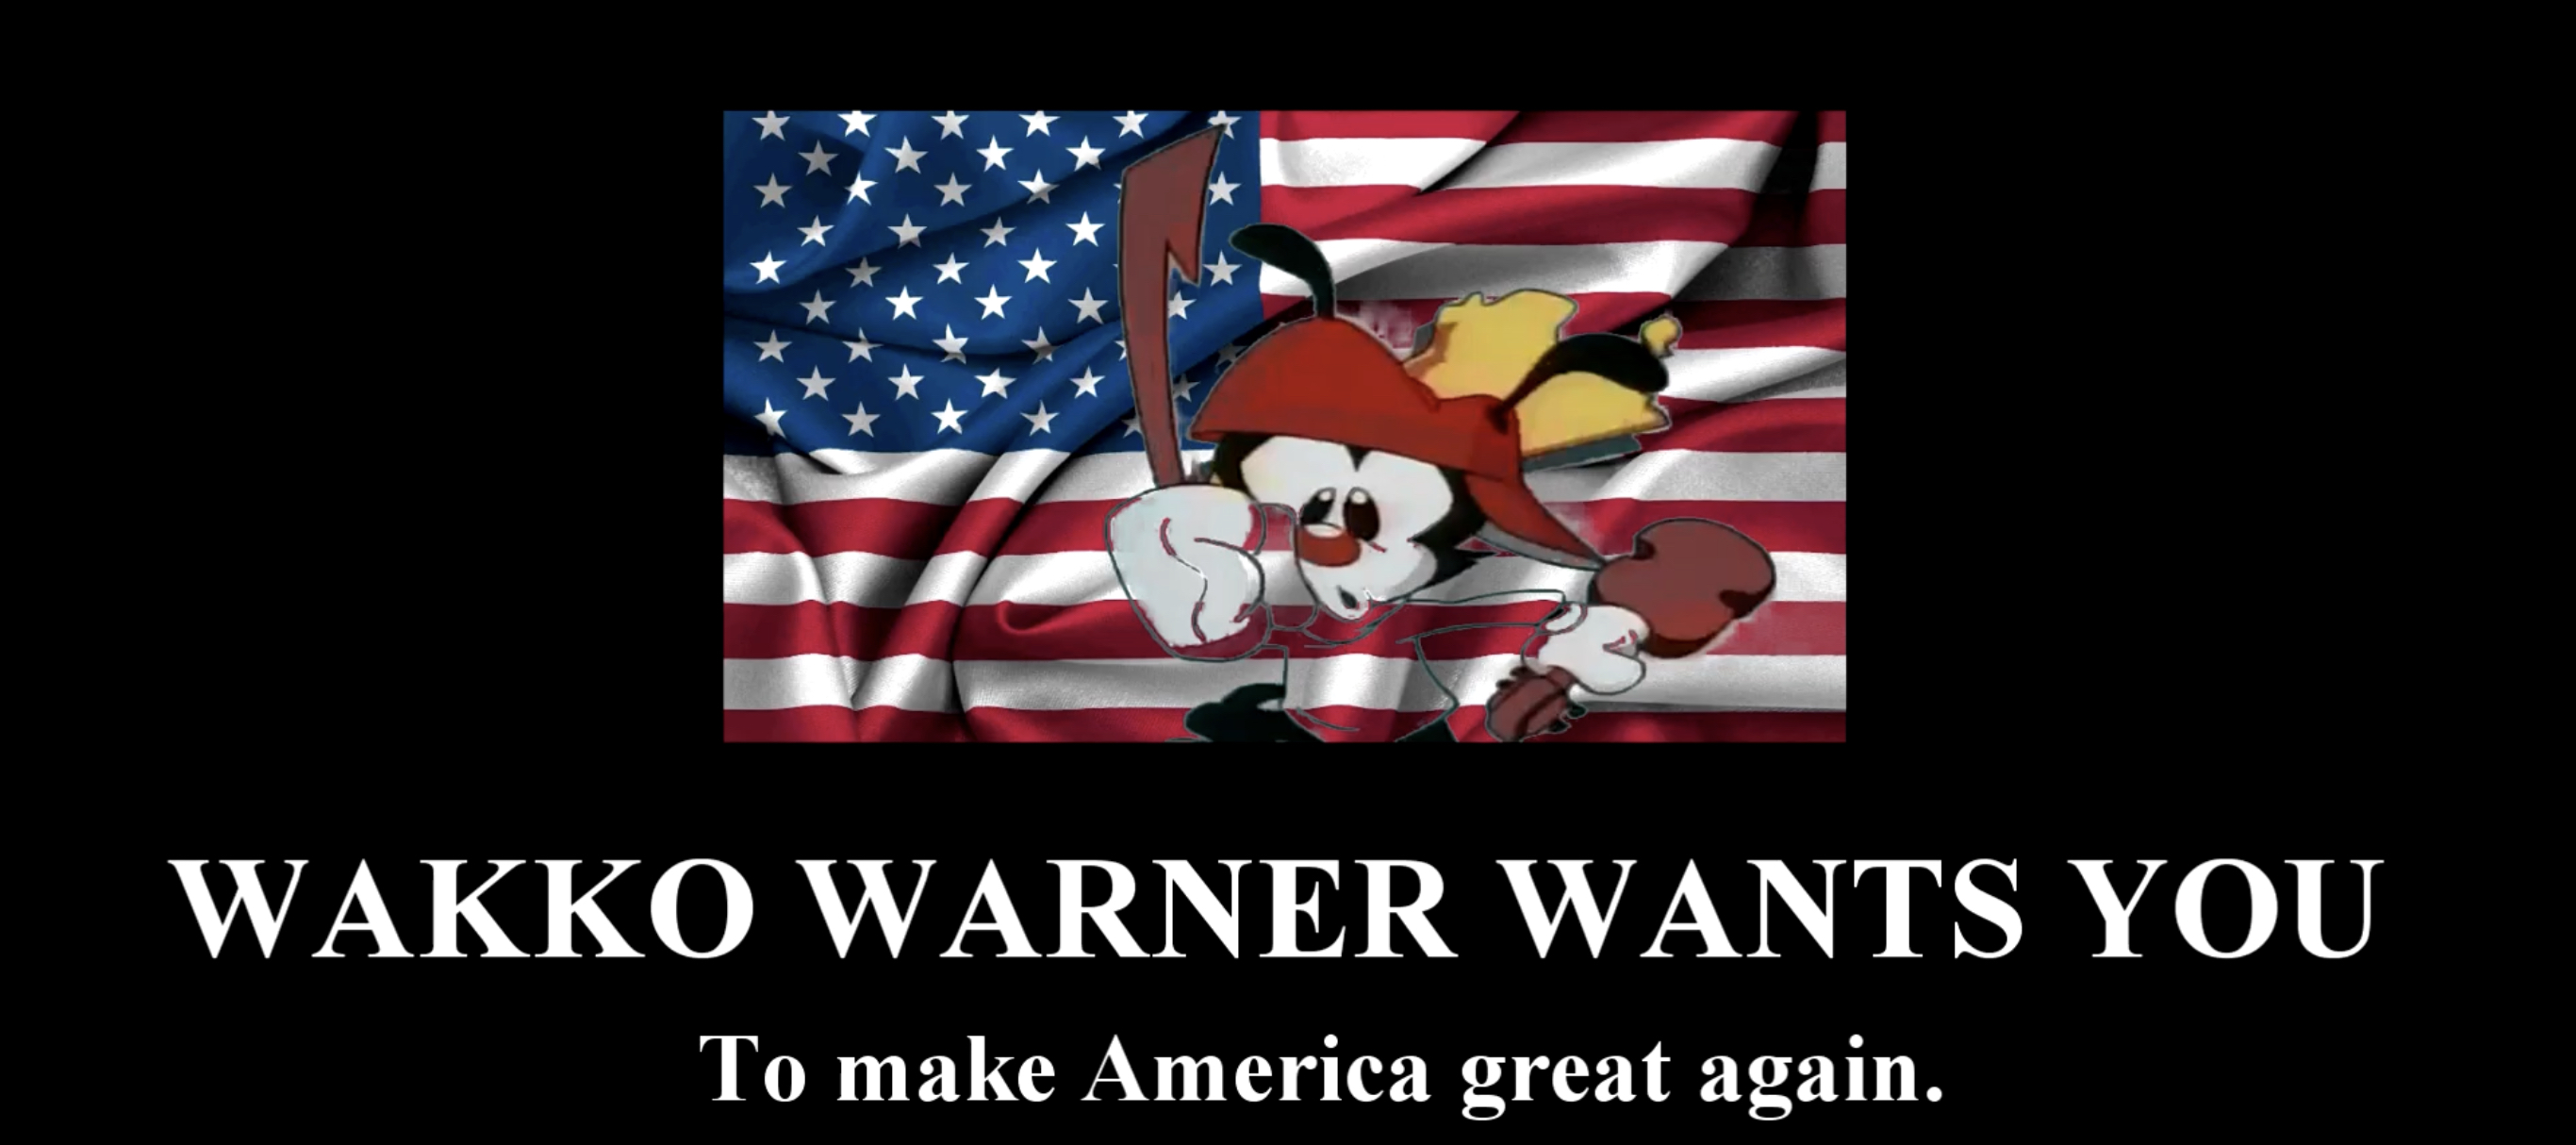 High Quality Wakko Warner wants you to make America great again Blank Meme Template